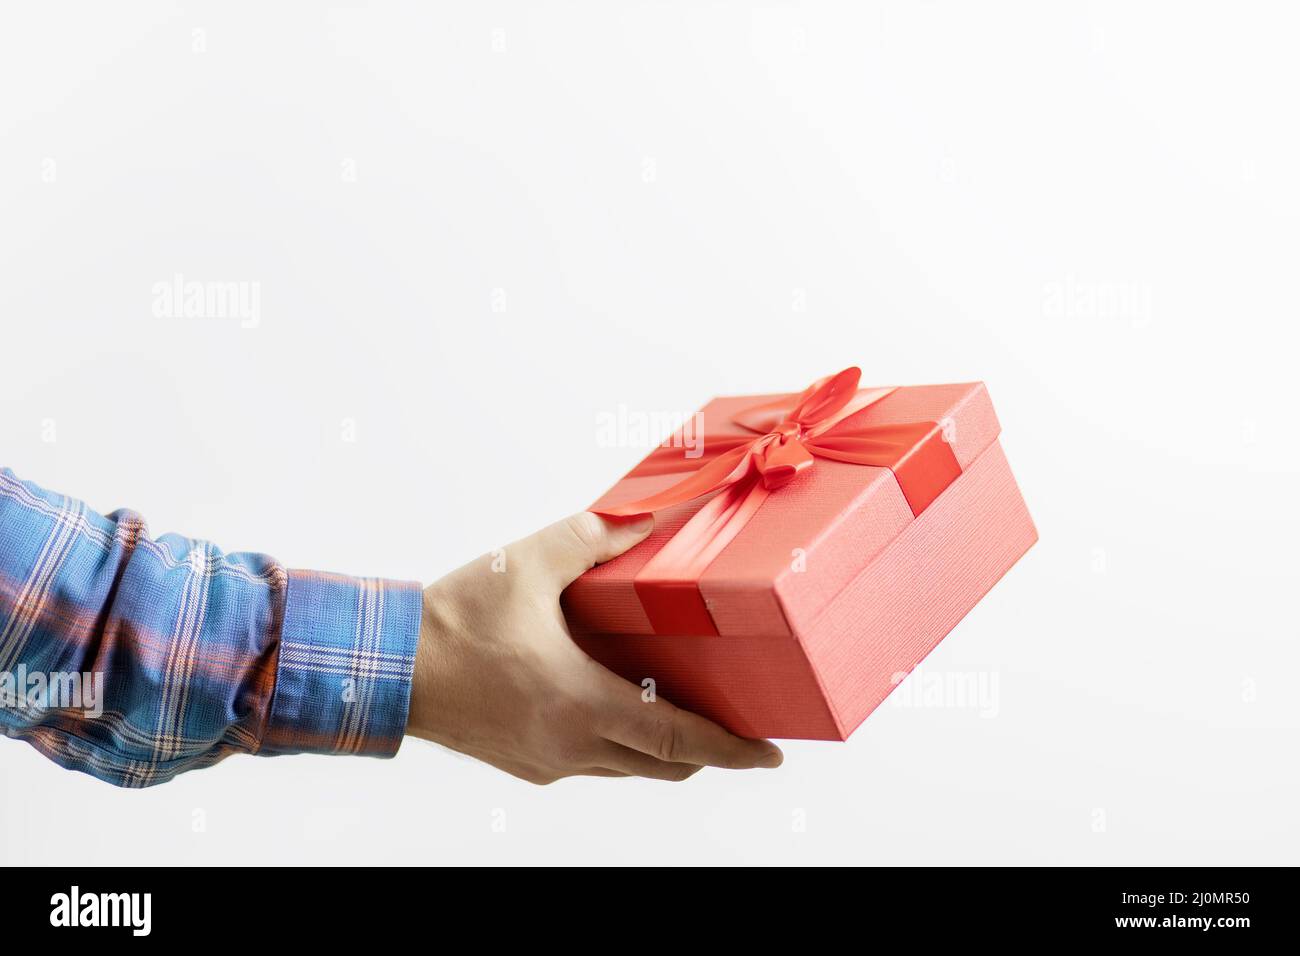 La main d'un homme dans une manche à carreaux tient une boîte rouge avec un cadeau sur un fond blanc. Cadeau pour une fête Banque D'Images